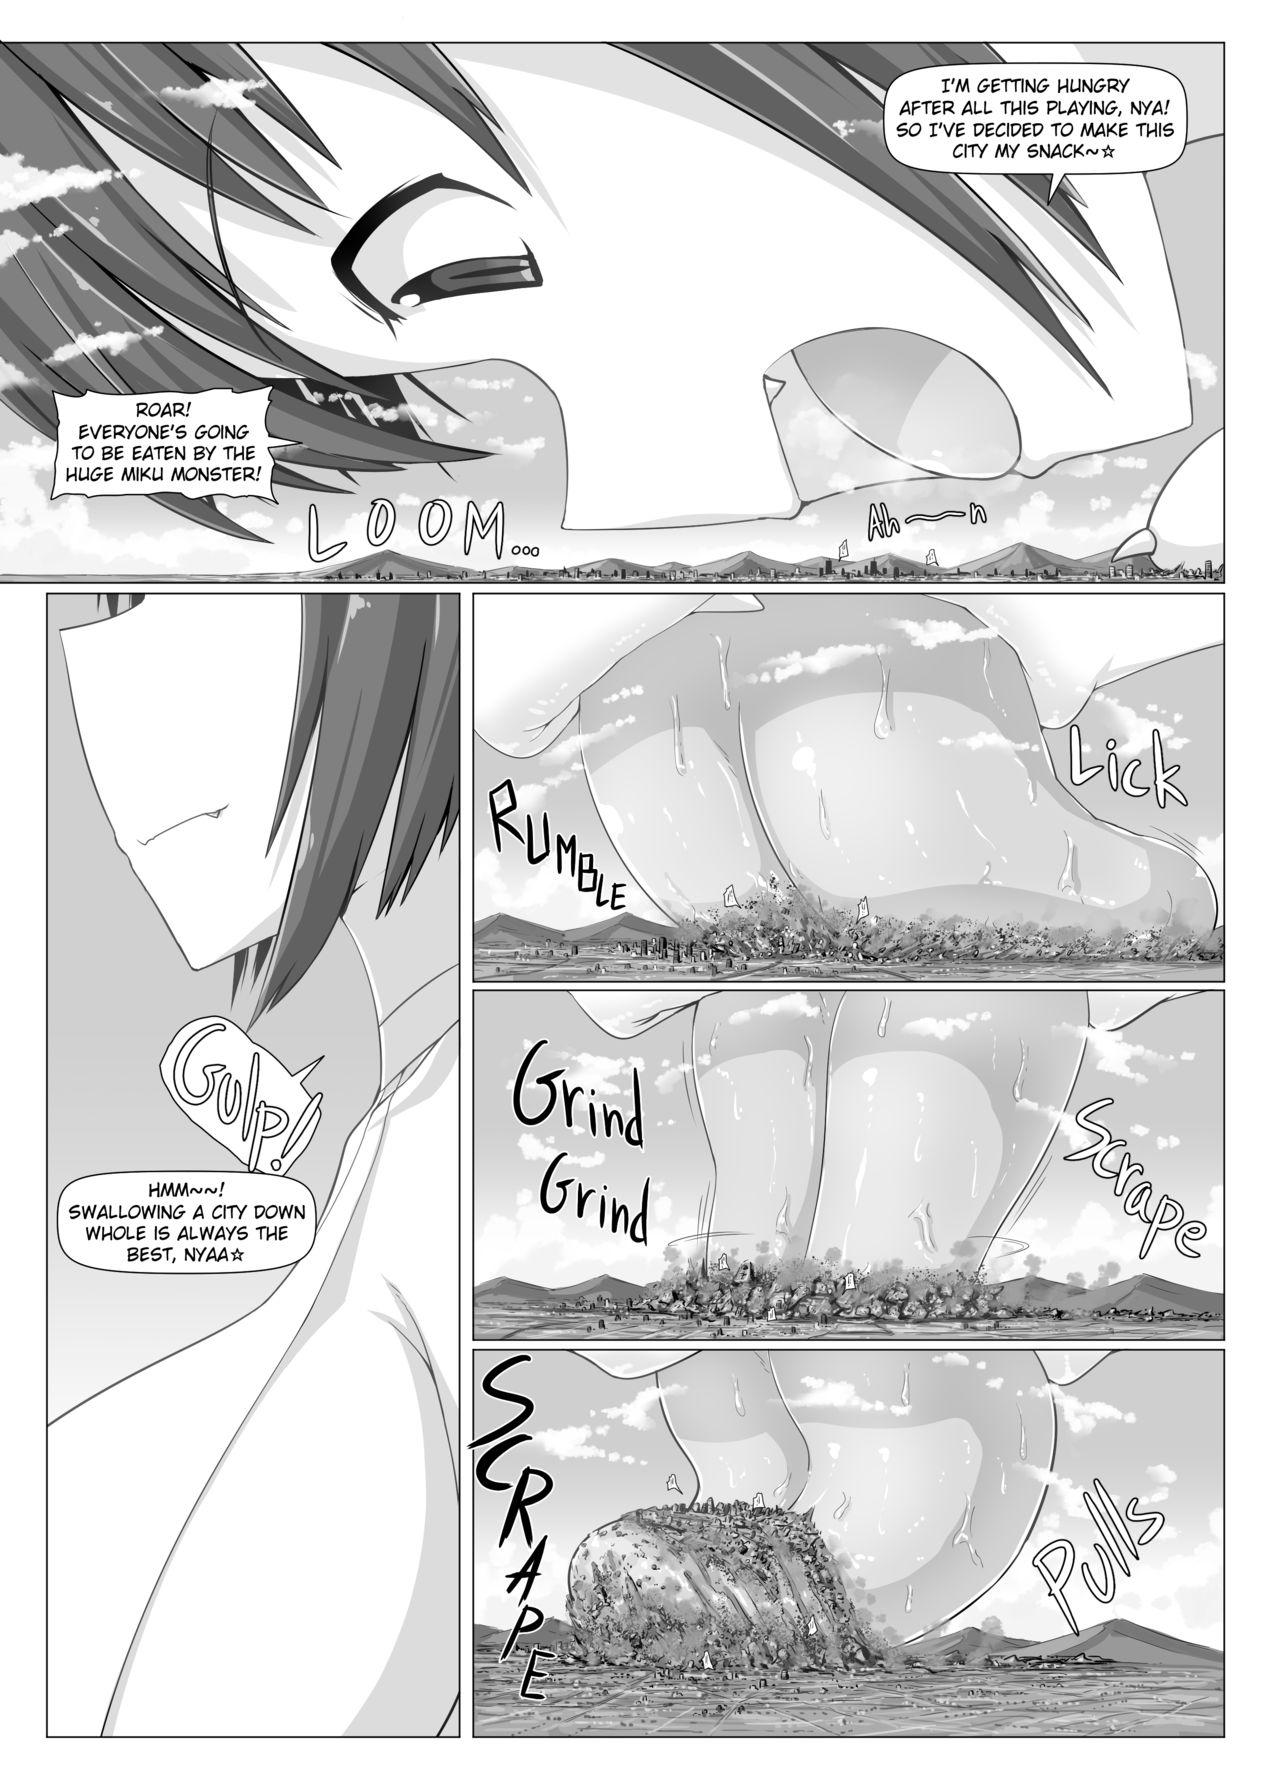 Bribe Gigantic Miku-san - Original Star - Page 5